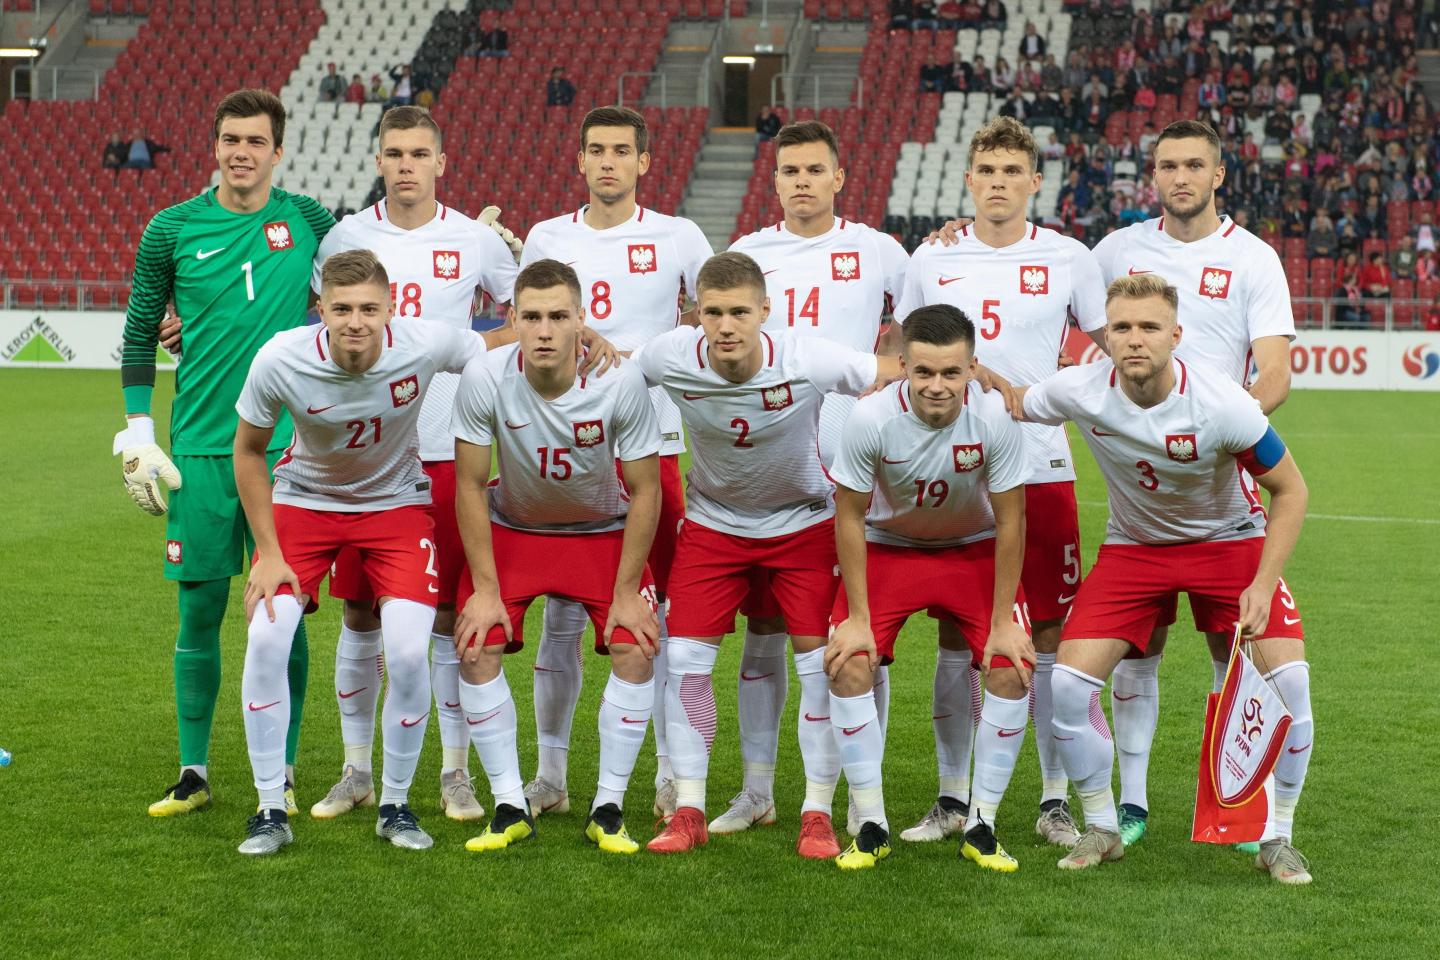 Zdjęcie grupowe reprezentacji Polski do lat 20 przed towarzyskim meczem z Czechami w październiku 2018 roku.